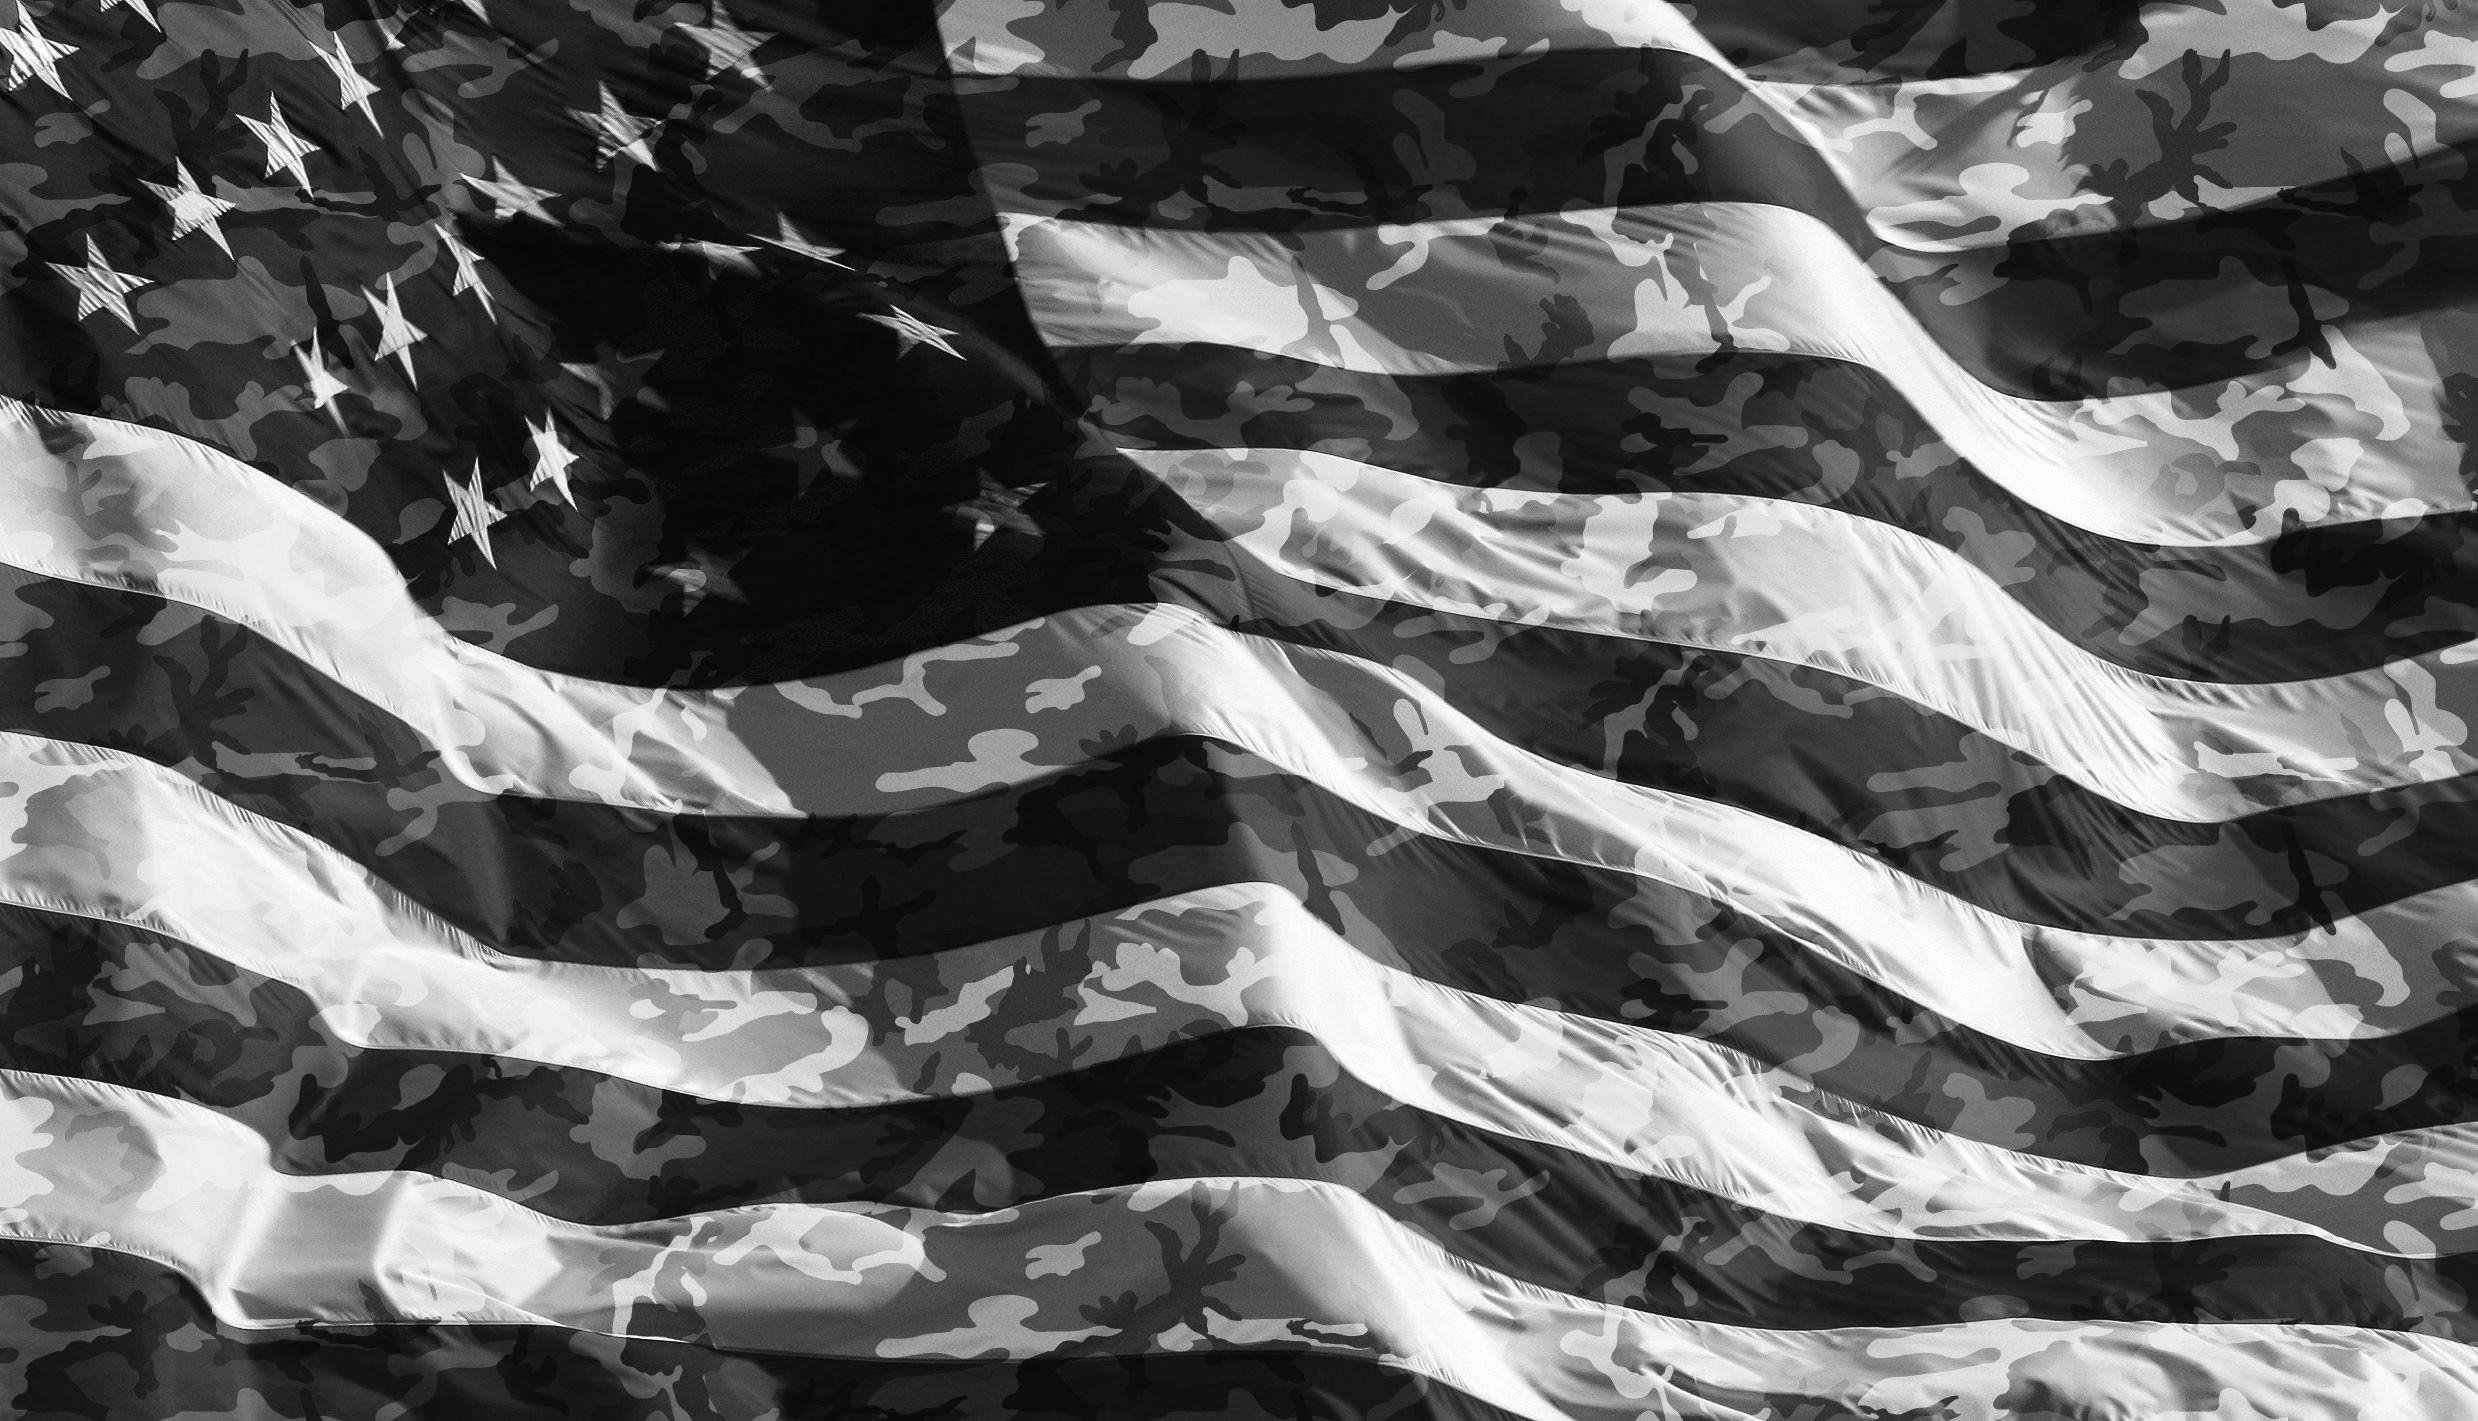 Dark American Flag iPhone Wallpapers - Top Free Dark American Flag ...